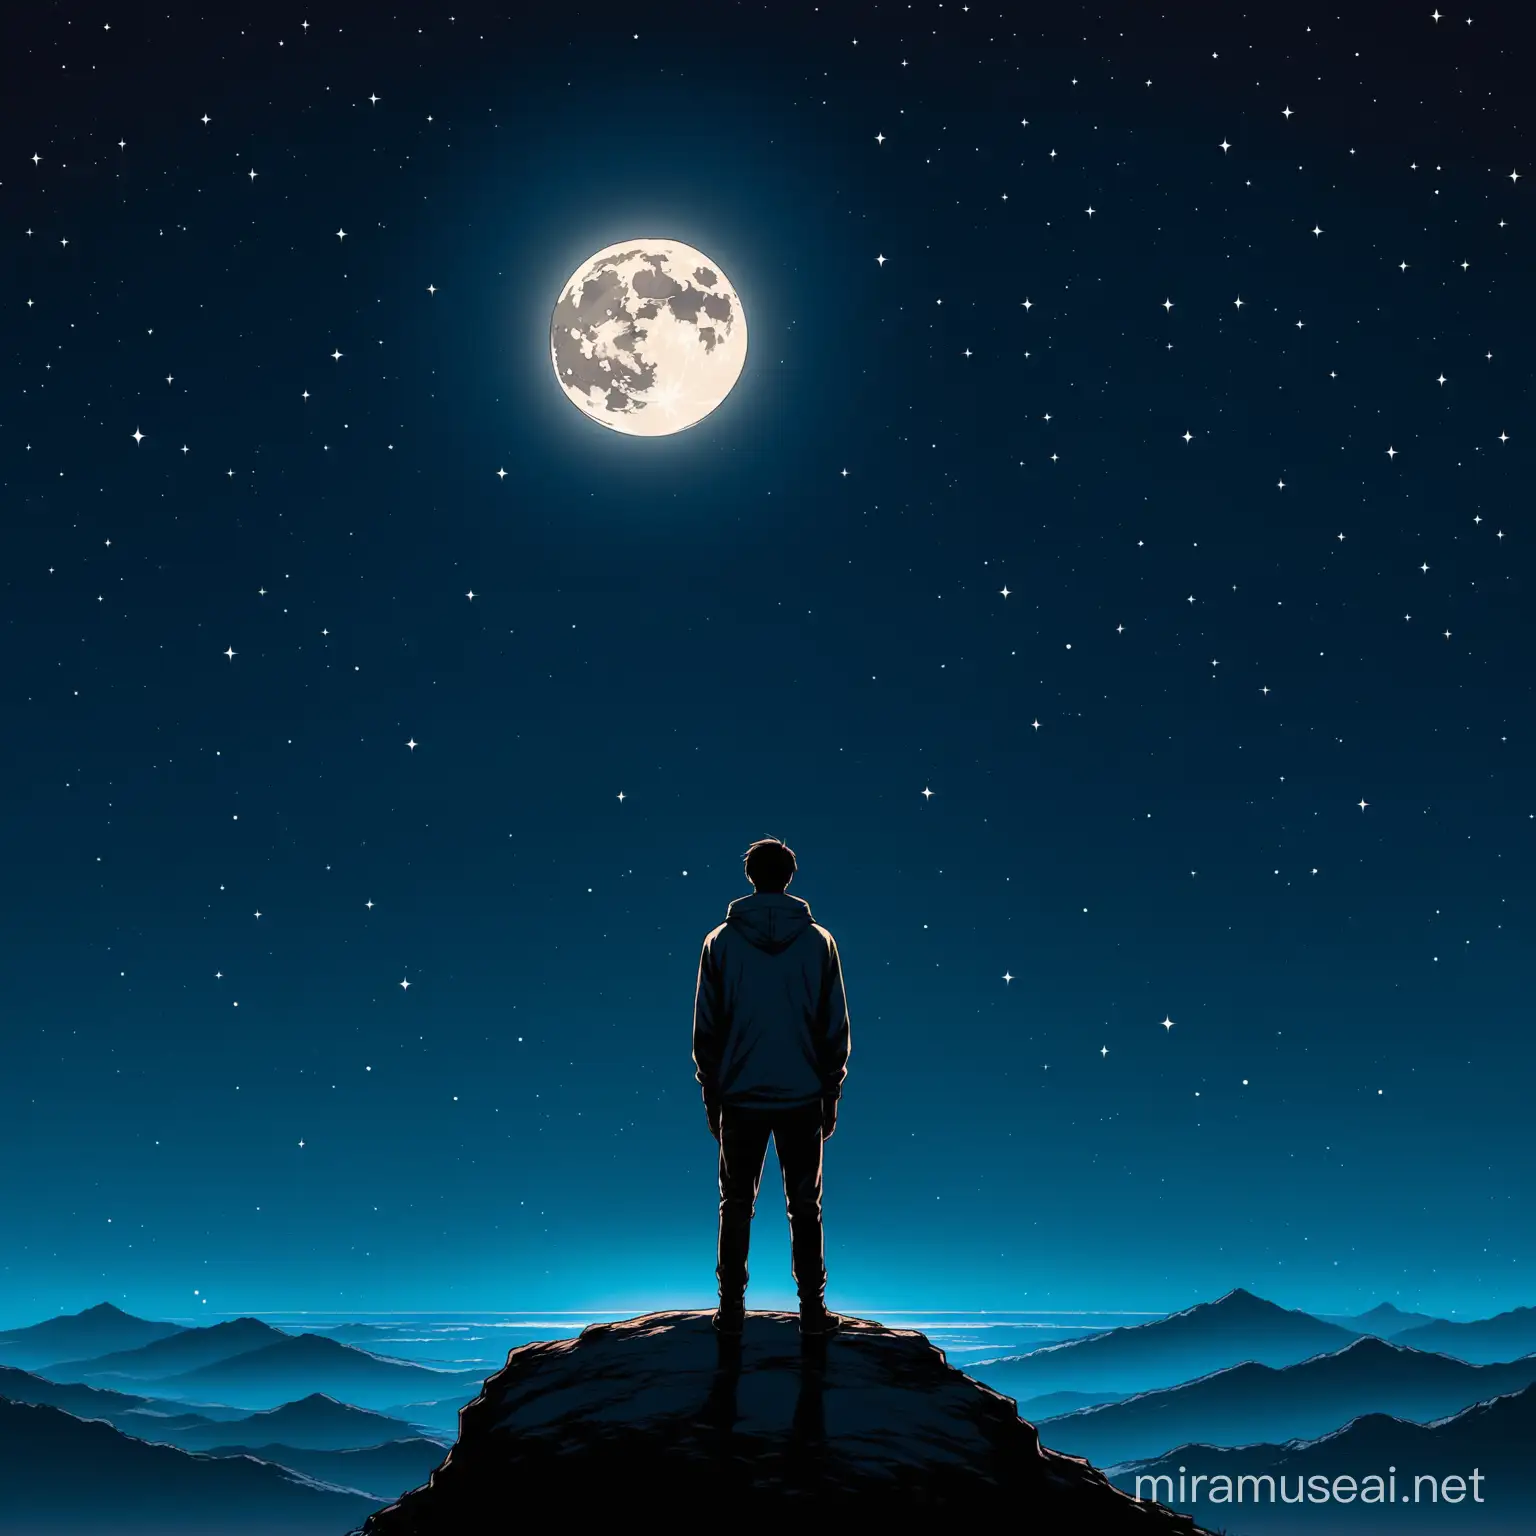 a guy facing the moon at night

